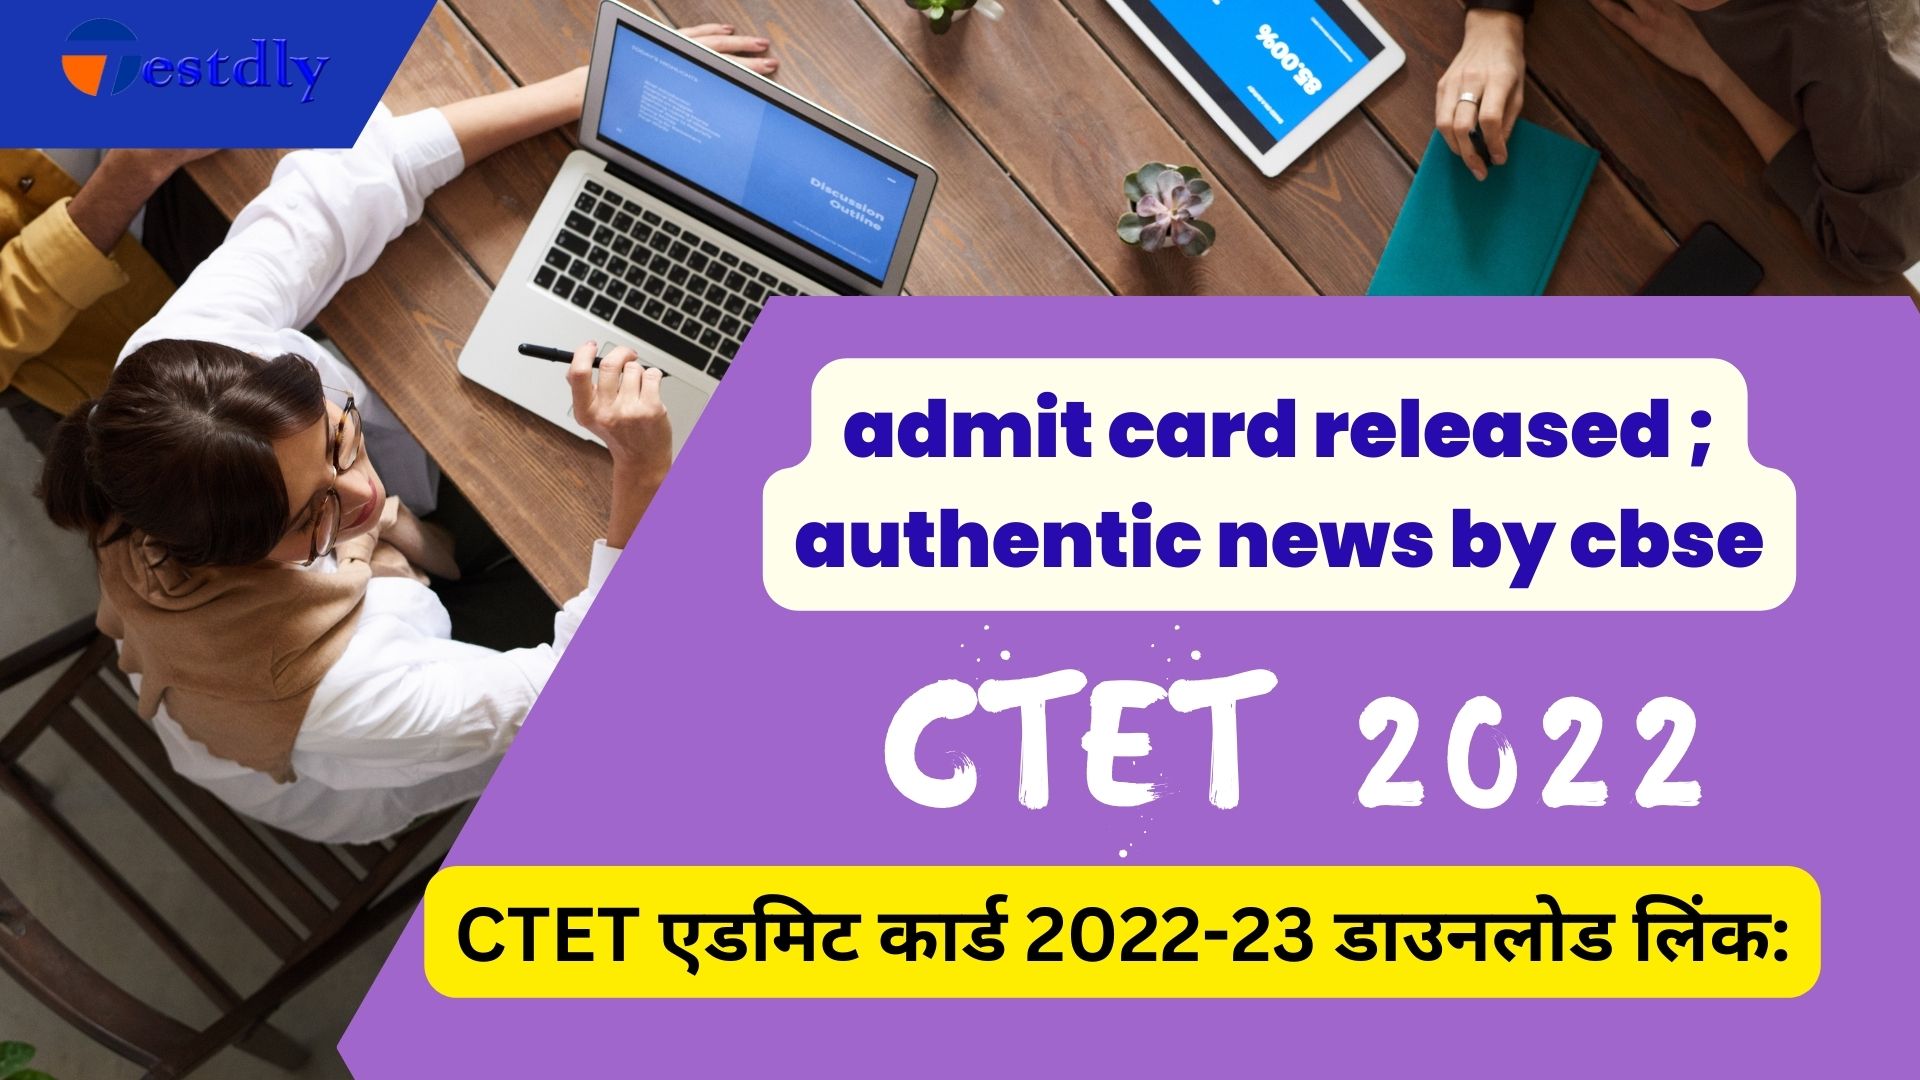 CTET एडमिट कार्ड 2022-23 डाउनलोड लिंक: